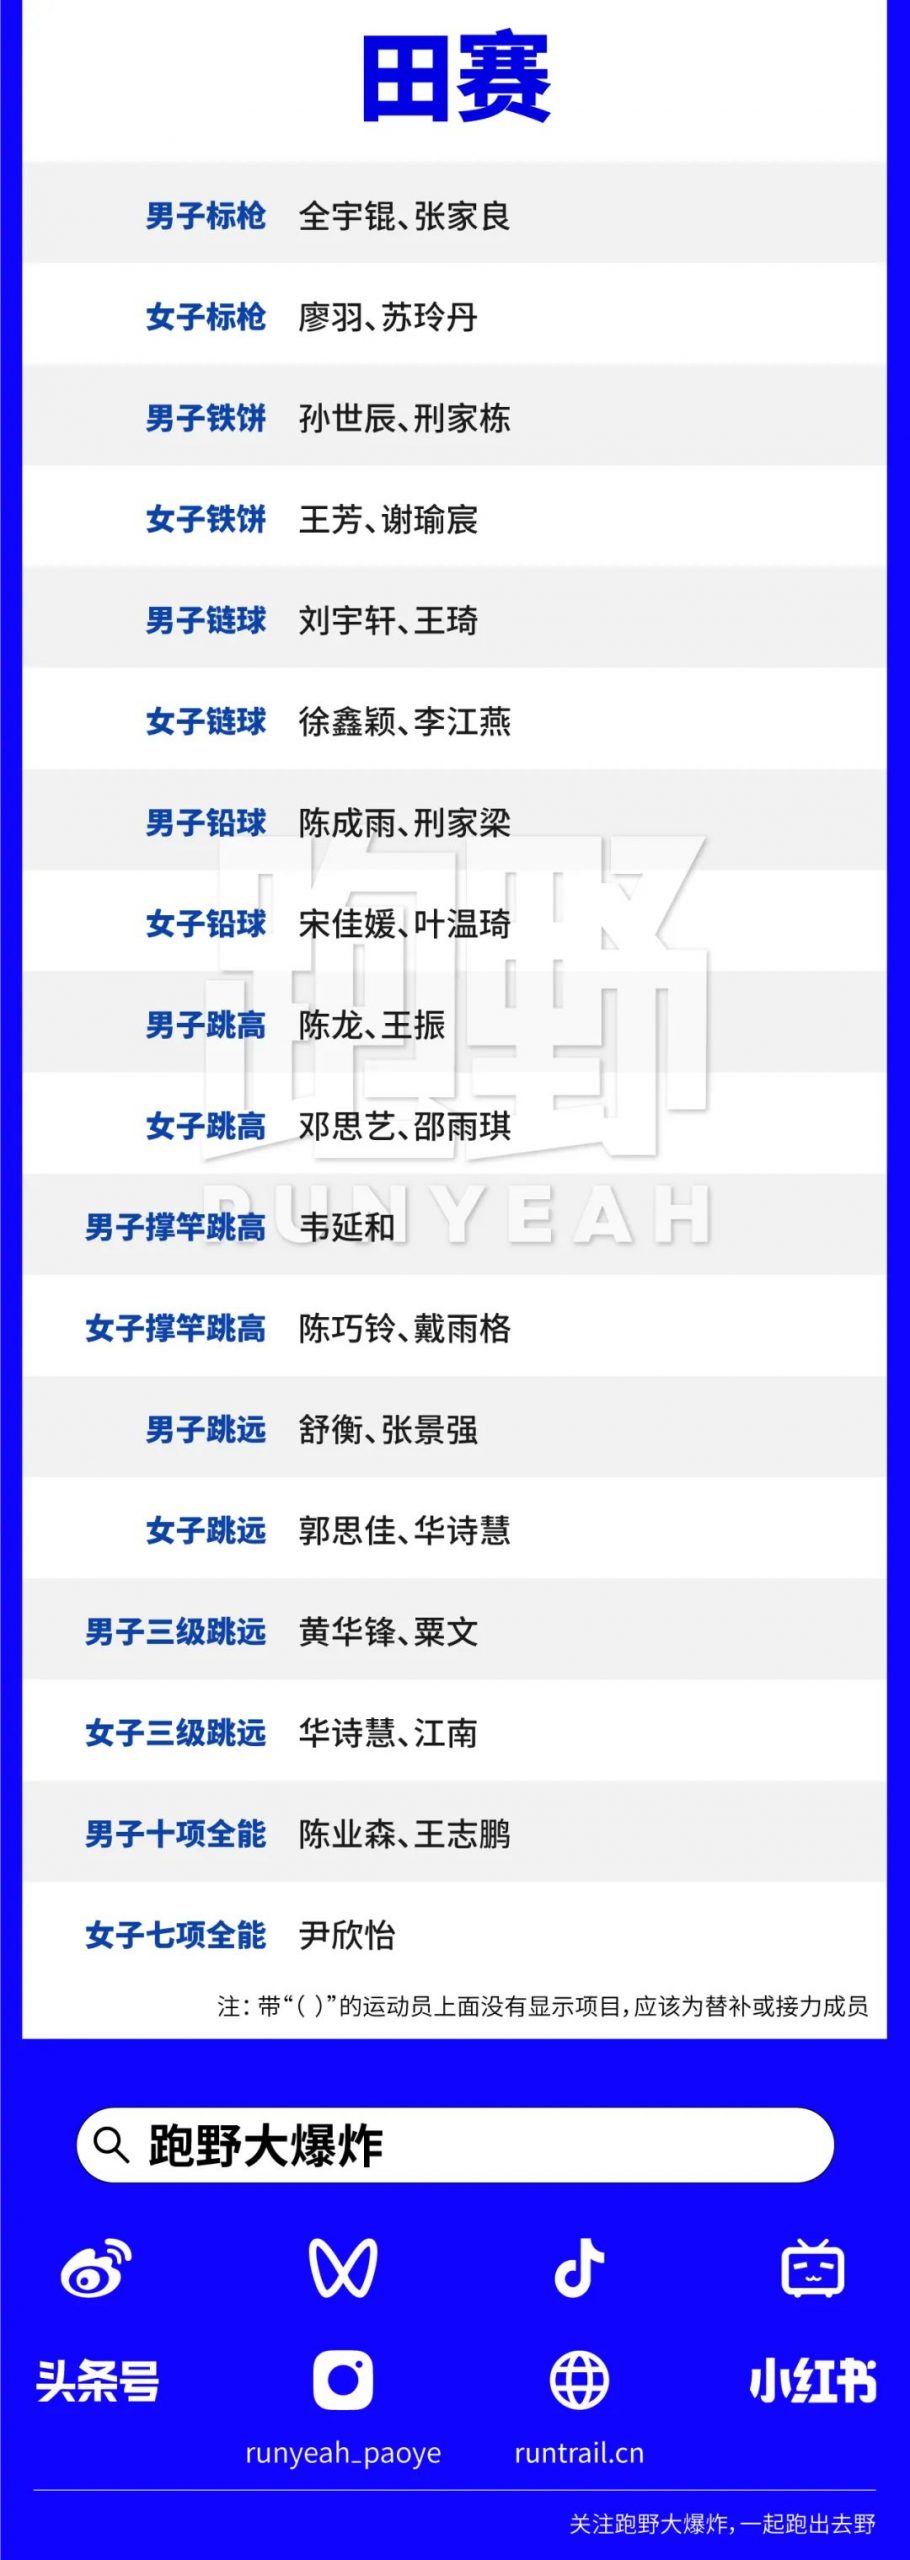 名单｜2023成都大学生运动会田径项目中国队参赛运动员